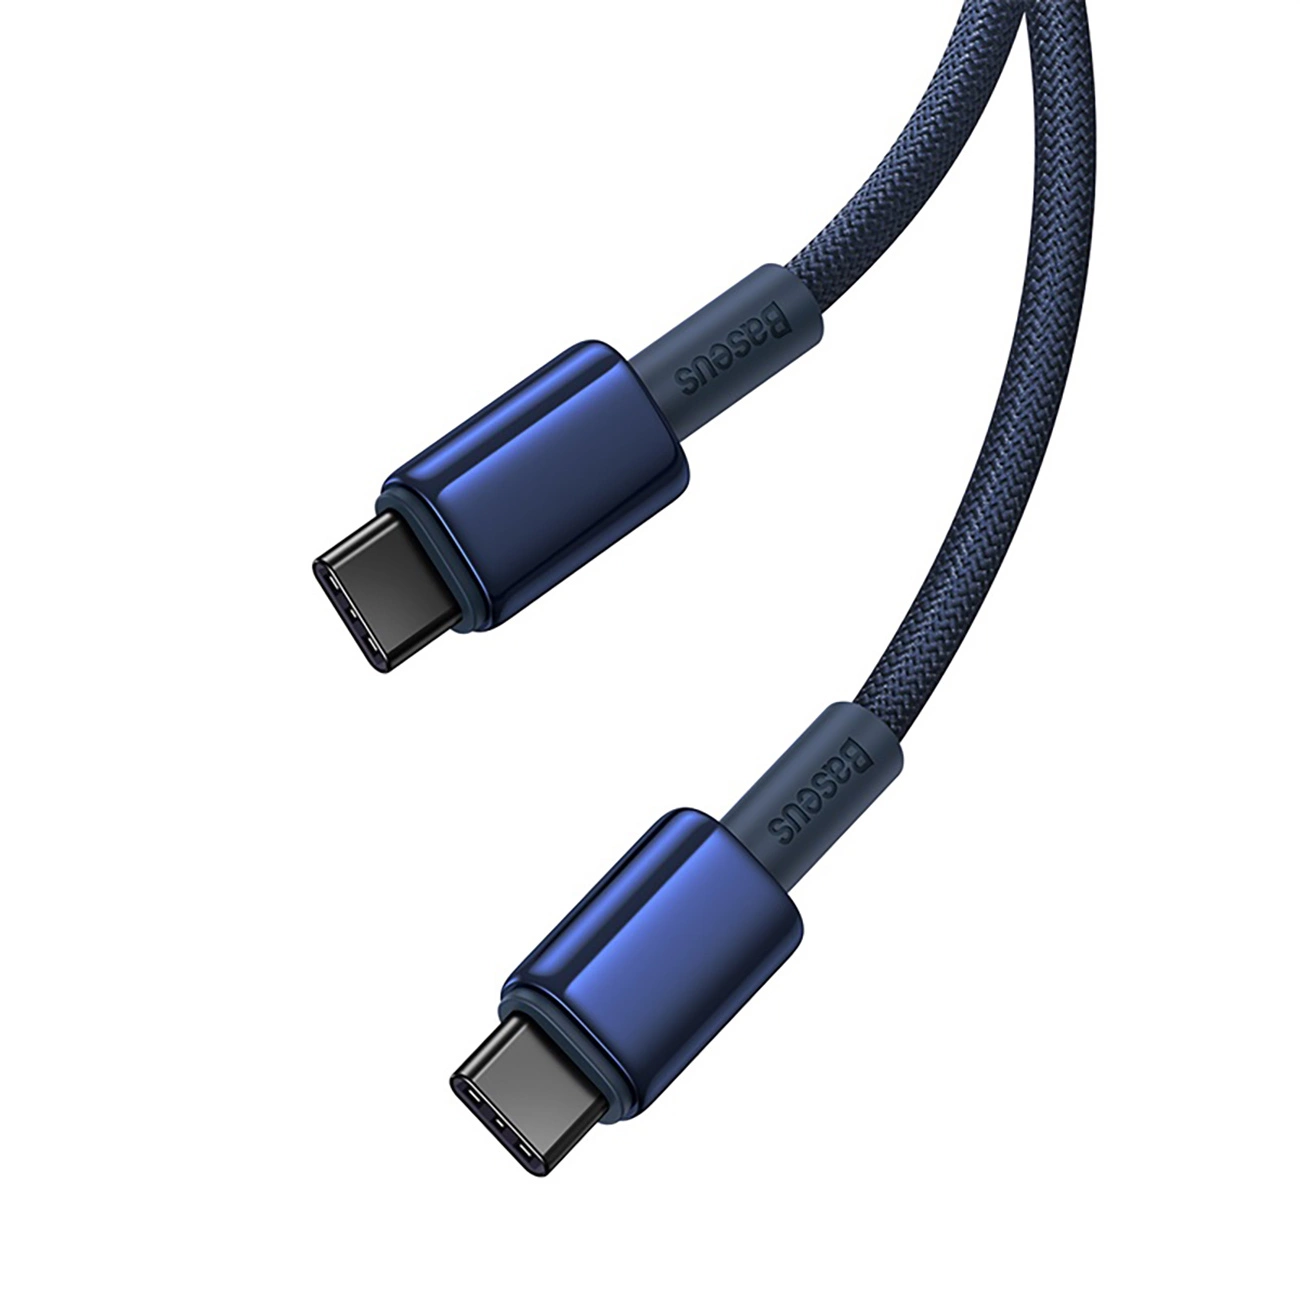 Baseus Tungsten Gold-Kabel mit USB-C/USB-C-Anschlüssen mit einer Leistung von bis zu 100 W und einer Länge von 2 m auf weißem Hintergrund